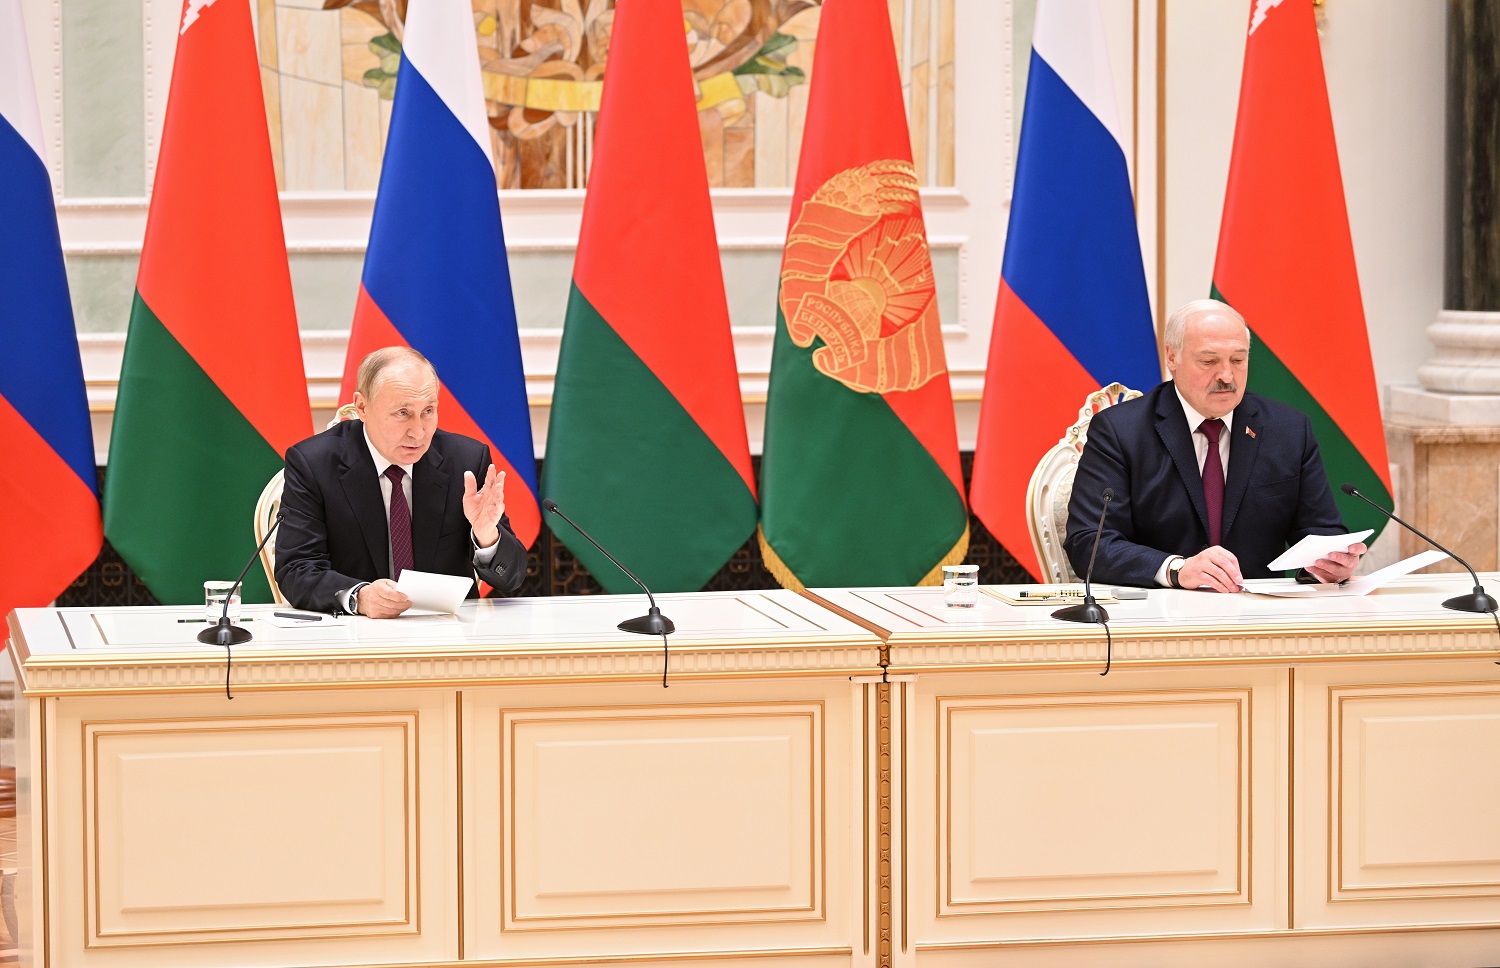 Prezidento patarėja apie V. Putino vizitą Minske: saugumo situacija regione negerėja